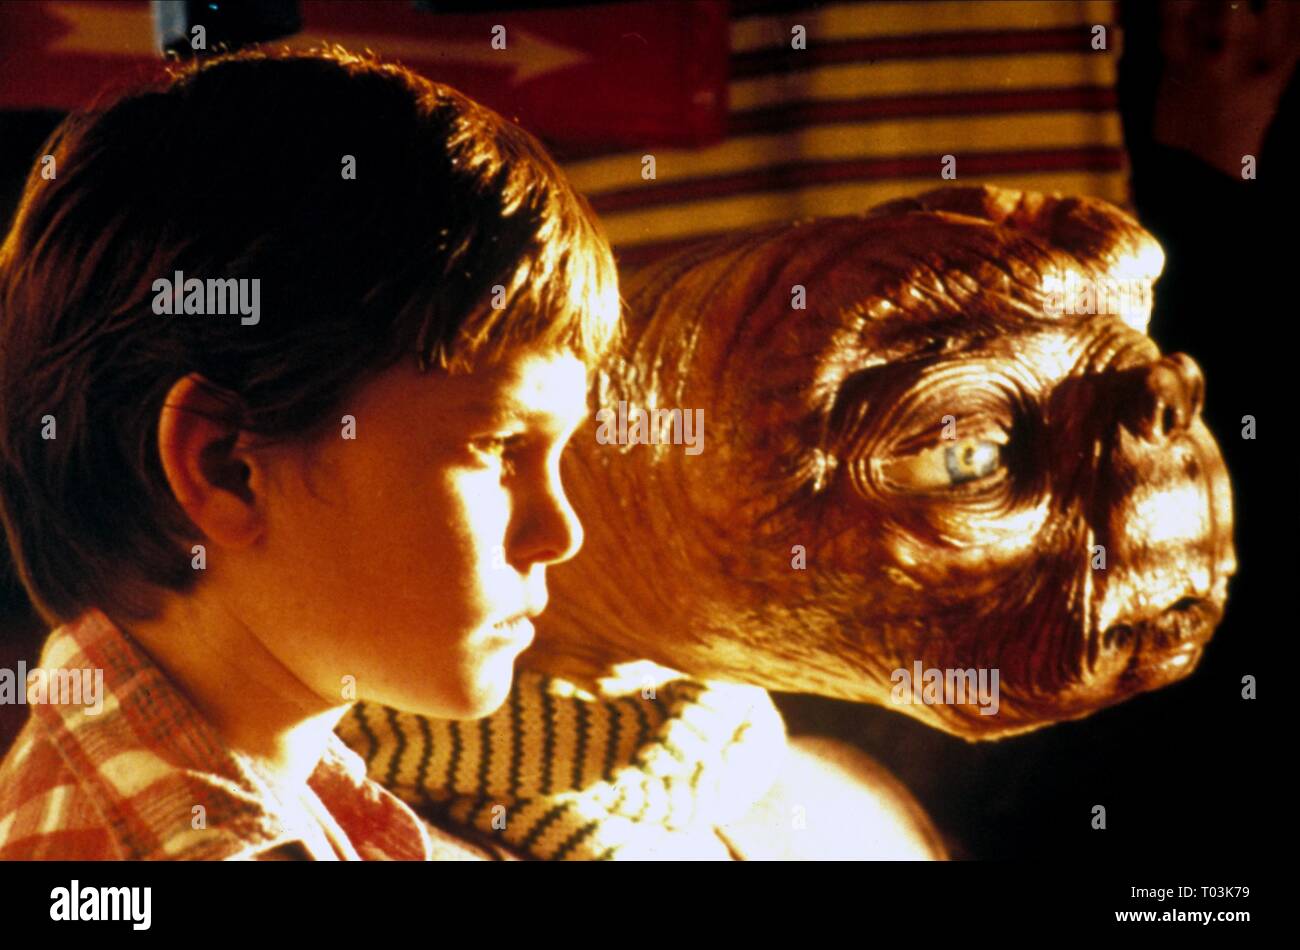 HENRY THOMAS, E.T. THE EXTRA-TERRESTRIAL, 1982 Stock Photo